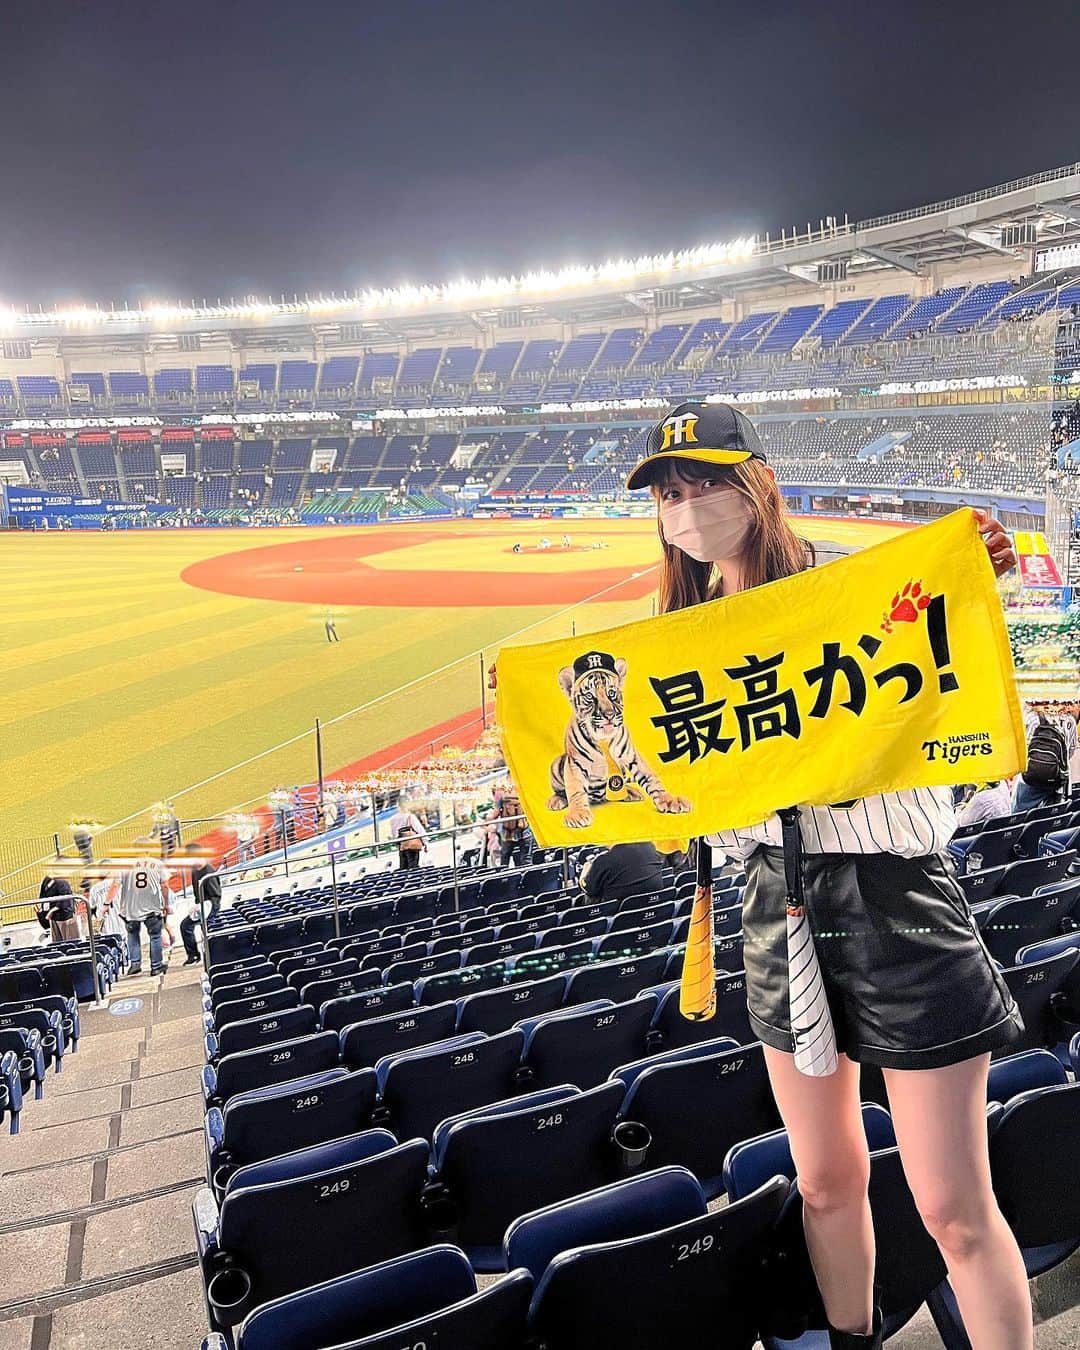 森杏奈のインスタグラム：「ㅤㅤㅤㅤㅤㅤㅤㅤㅤㅤㅤㅤㅤㅤㅤㅤㅤㅤㅤㅤ⠀⠀ ㅤㅤㅤㅤㅤㅤㅤㅤㅤㅤㅤㅤㅤㅤㅤㅤㅤㅤㅤㅤ⠀⠀ とても嬉しいのでInstagramにも🙏🏻 ㅤㅤㅤㅤㅤㅤㅤㅤㅤㅤㅤㅤㅤㅤㅤㅤㅤㅤㅤㅤ⠀⠀ 阪神、リーグ優勝おめでとうございます🥹🏆 とーーーっても嬉しい😭 ㅤㅤㅤㅤㅤㅤㅤㅤㅤㅤㅤㅤㅤㅤㅤㅤㅤㅤㅤㅤ⠀⠀ プロスピに出会えて、野球を観るようになったから この喜びを感じられています💭⸒⸒︎ ㅤㅤㅤㅤㅤㅤㅤㅤㅤㅤㅤㅤㅤㅤㅤㅤㅤㅤㅤㅤ⠀⠀ プロスピにも大感謝。 ㅤㅤㅤㅤㅤㅤㅤㅤㅤㅤㅤㅤㅤㅤㅤㅤㅤㅤㅤㅤ⠀⠀ 素晴らしい試合をありがとうございます！ さて、次は日本一のアレを目指して…！🇯🇵 ㅤㅤㅤㅤㅤㅤㅤㅤㅤㅤㅤㅤㅤㅤㅤㅤㅤㅤㅤㅤ⠀⠀ Xと同じ写真じゃ、な、な、ないよට ̫ට ; ㅤㅤㅤㅤㅤㅤㅤㅤㅤㅤㅤㅤㅤㅤㅤㅤㅤㅤㅤㅤ⠀⠀ #阪神 #阪神タイガース ㅤㅤㅤㅤㅤㅤㅤㅤㅤㅤㅤㅤㅤㅤㅤㅤㅤㅤㅤㅤ⠀⠀」